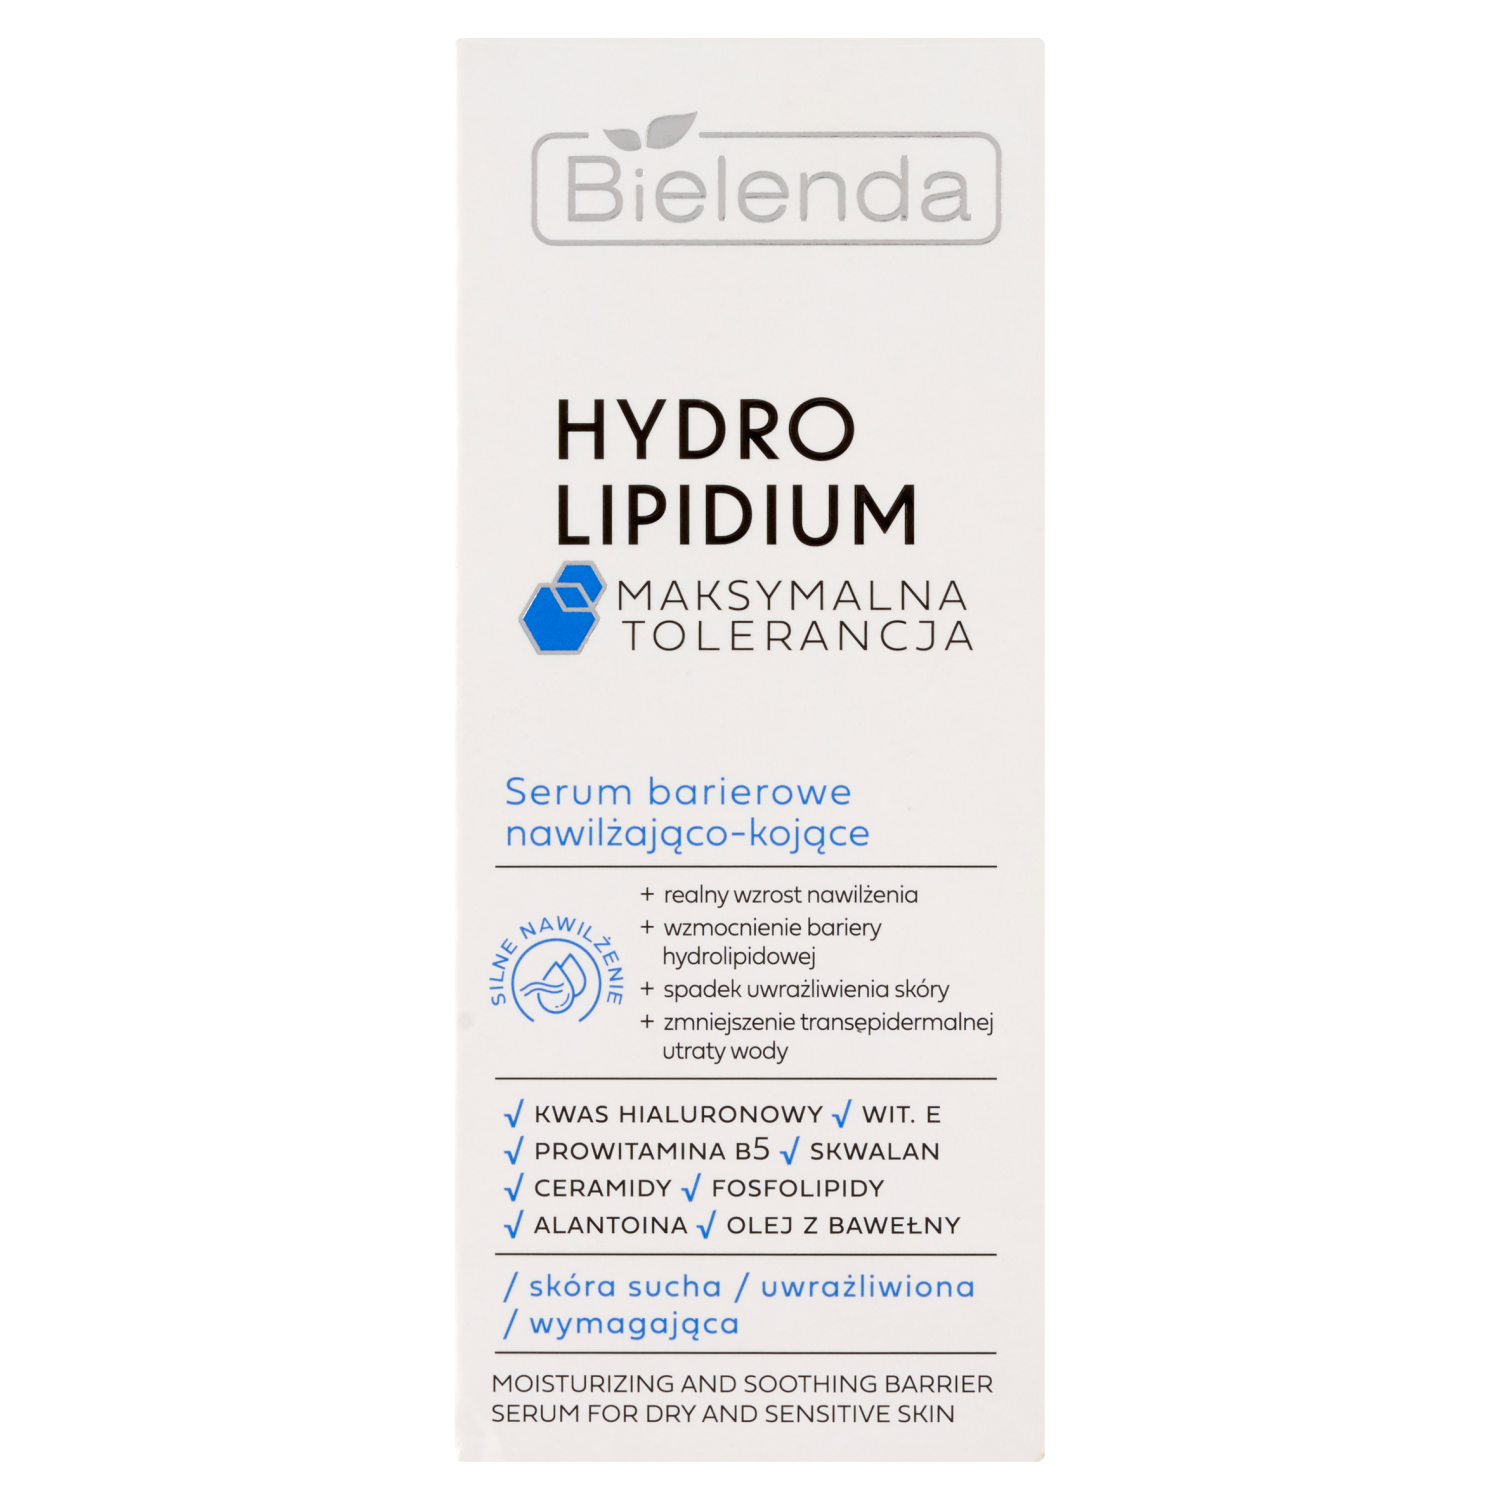 Увлажняющая и успокаивающая барьерная сыворотка для лица Bielenda Hydro Lipidium, 30 мл